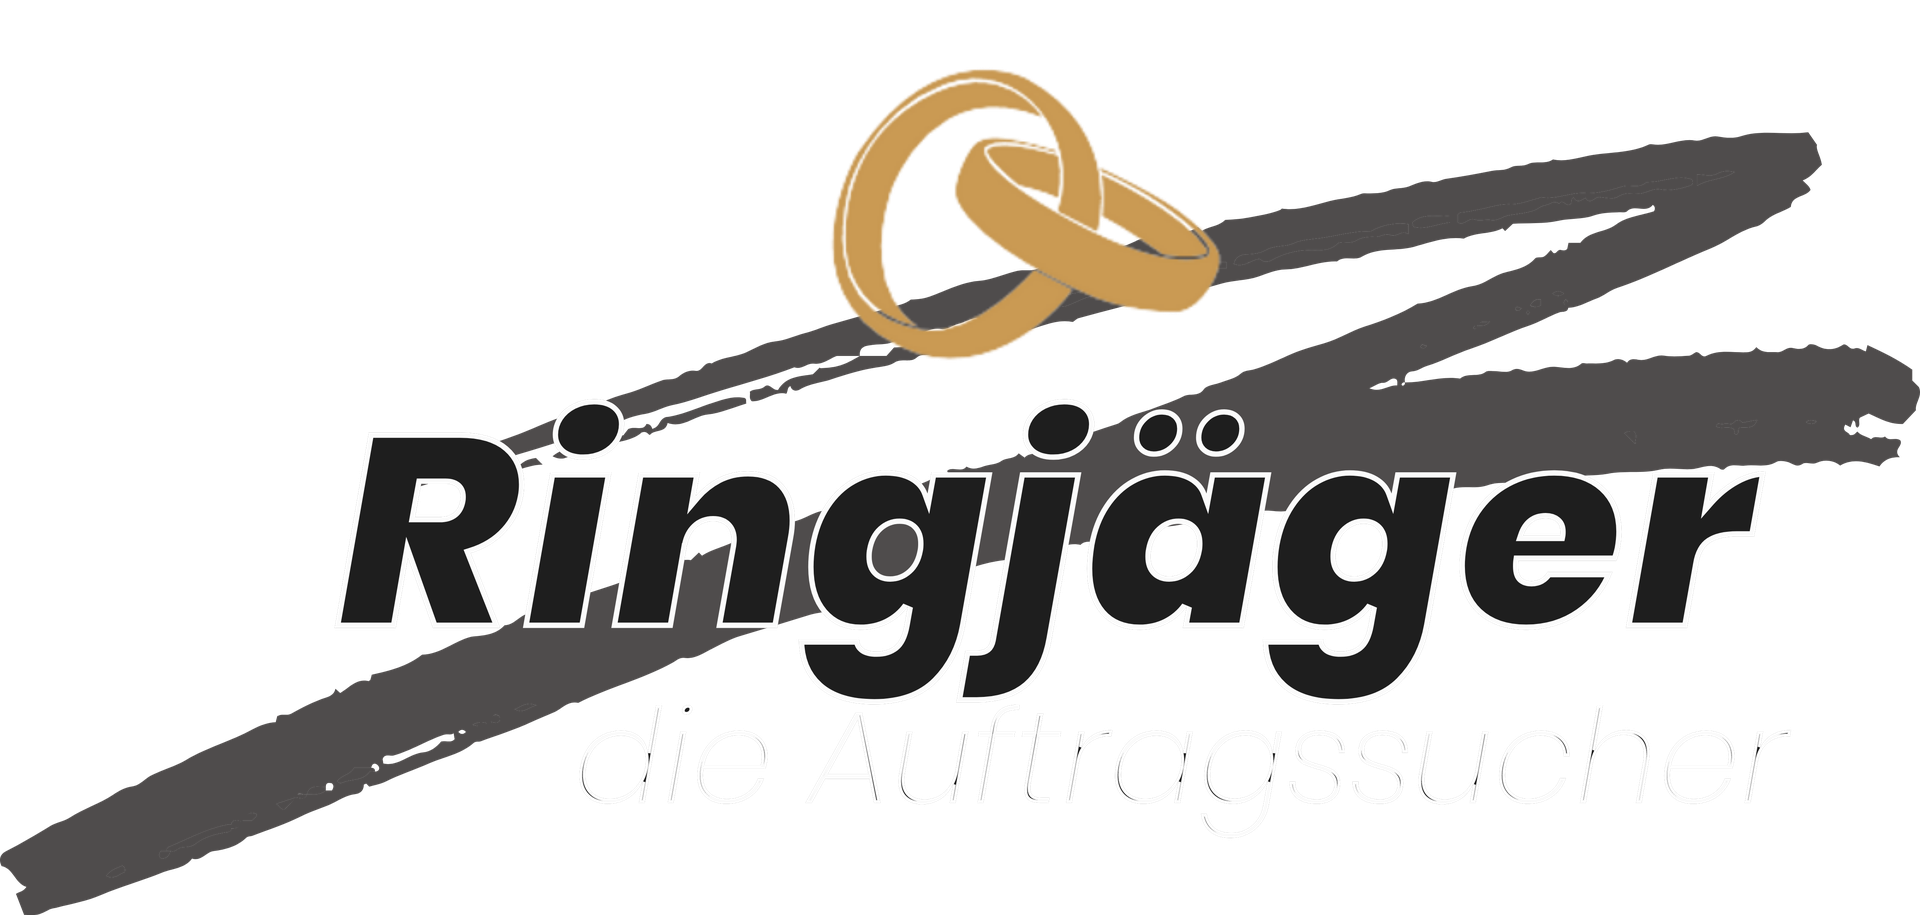 www.ringjaeger.de